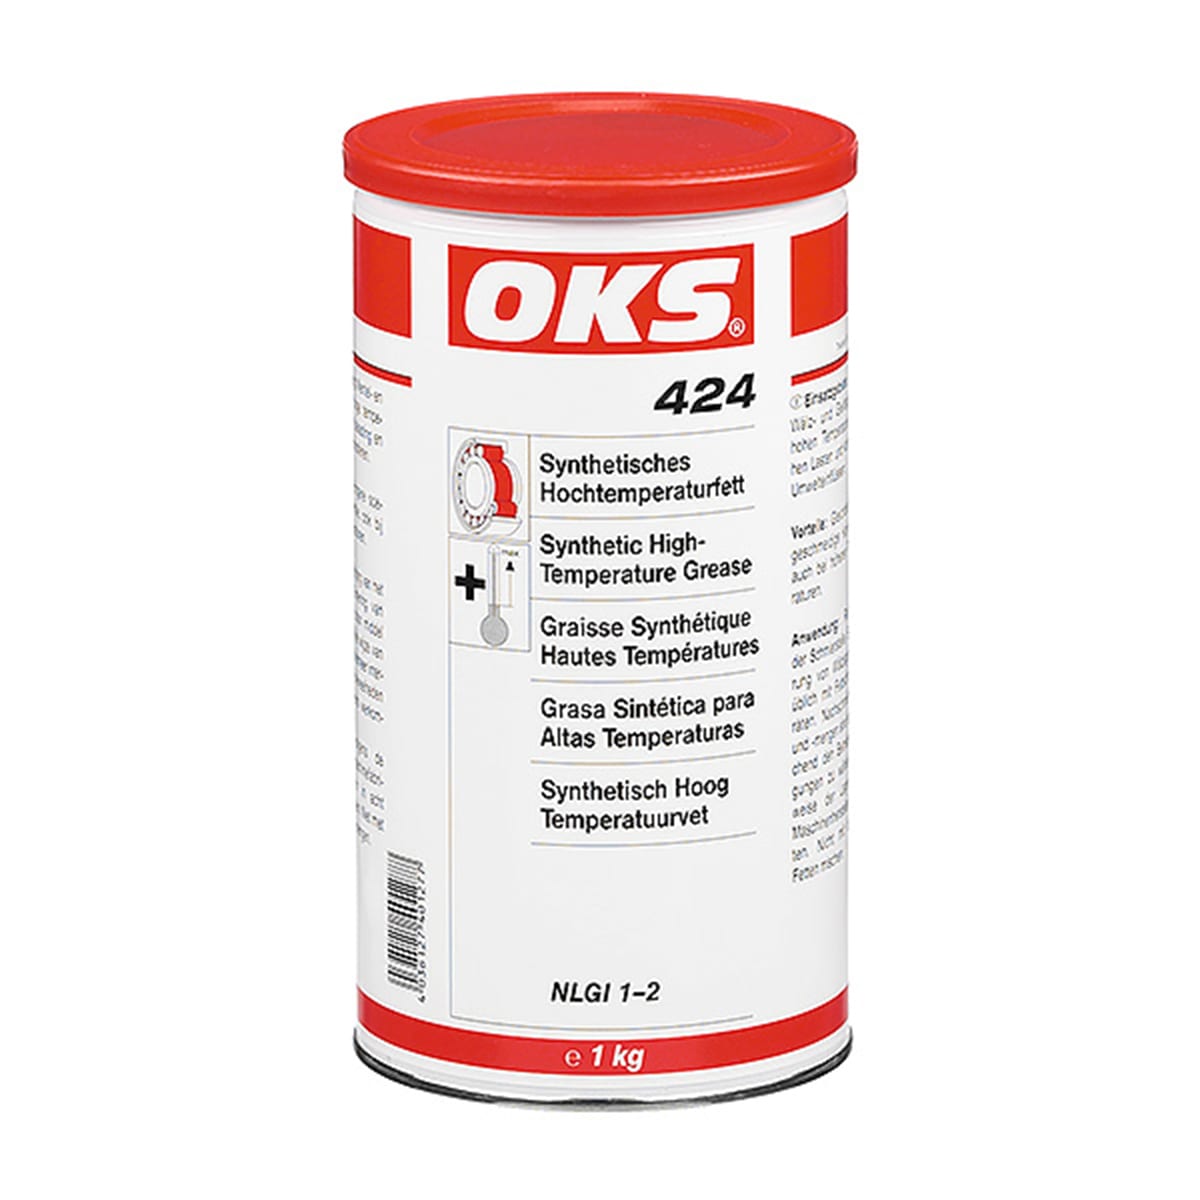 OKS 424 Synthetisches Hochtemperaturfett 400 ml Kartusche / 1kg